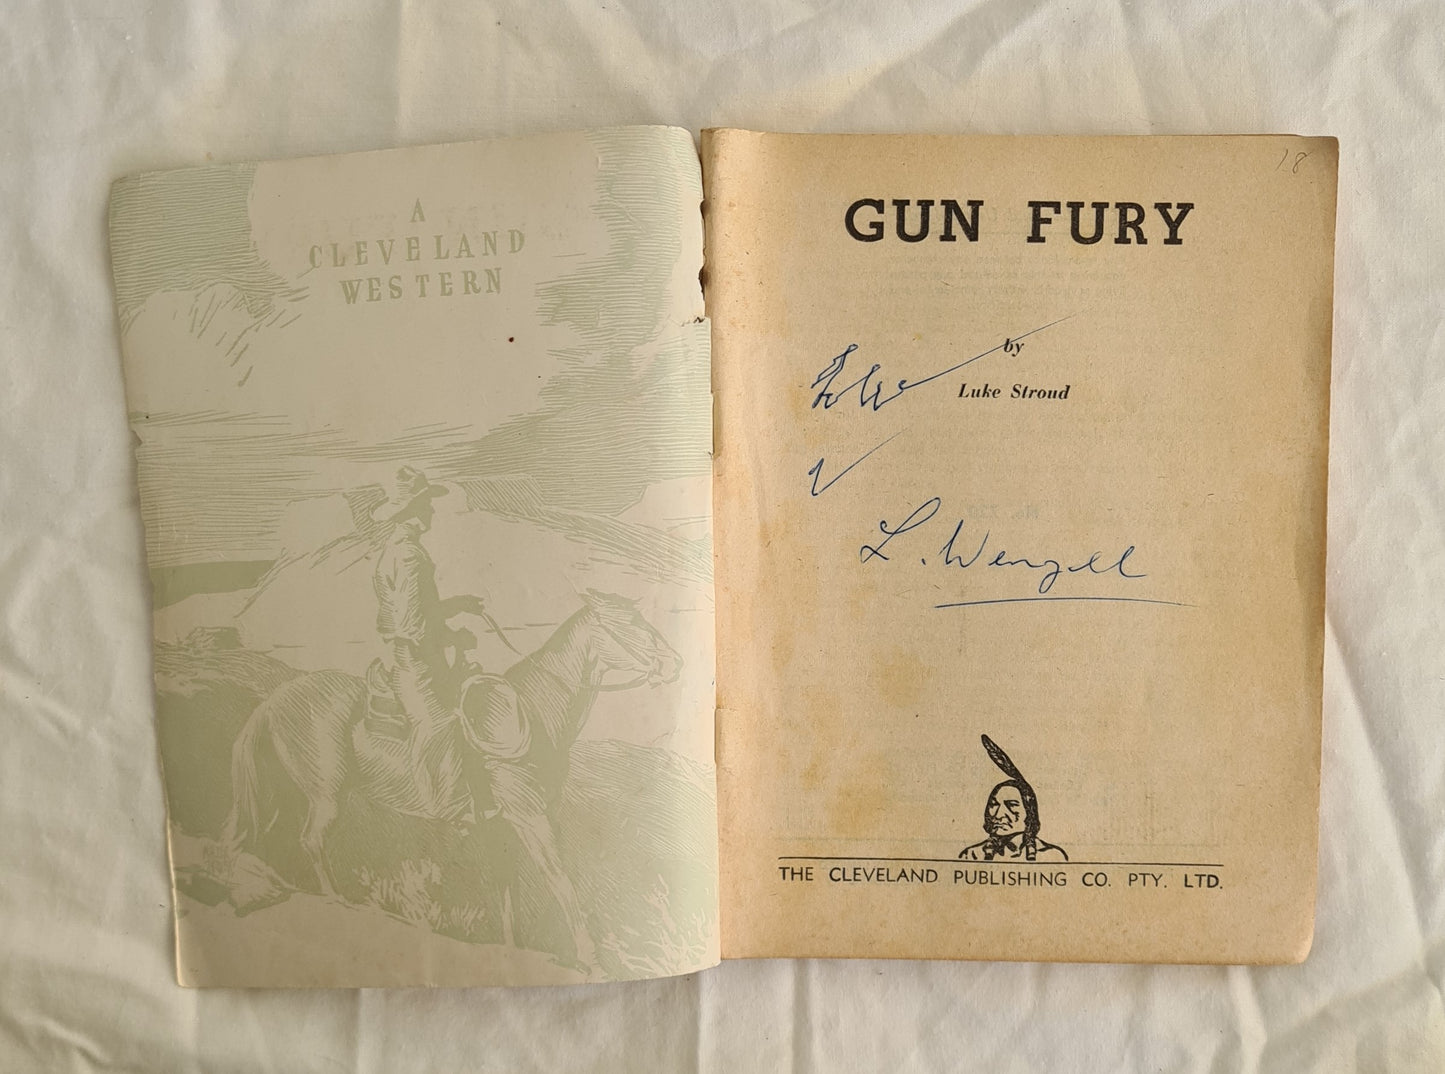 Gun Fury by Luke Stroud